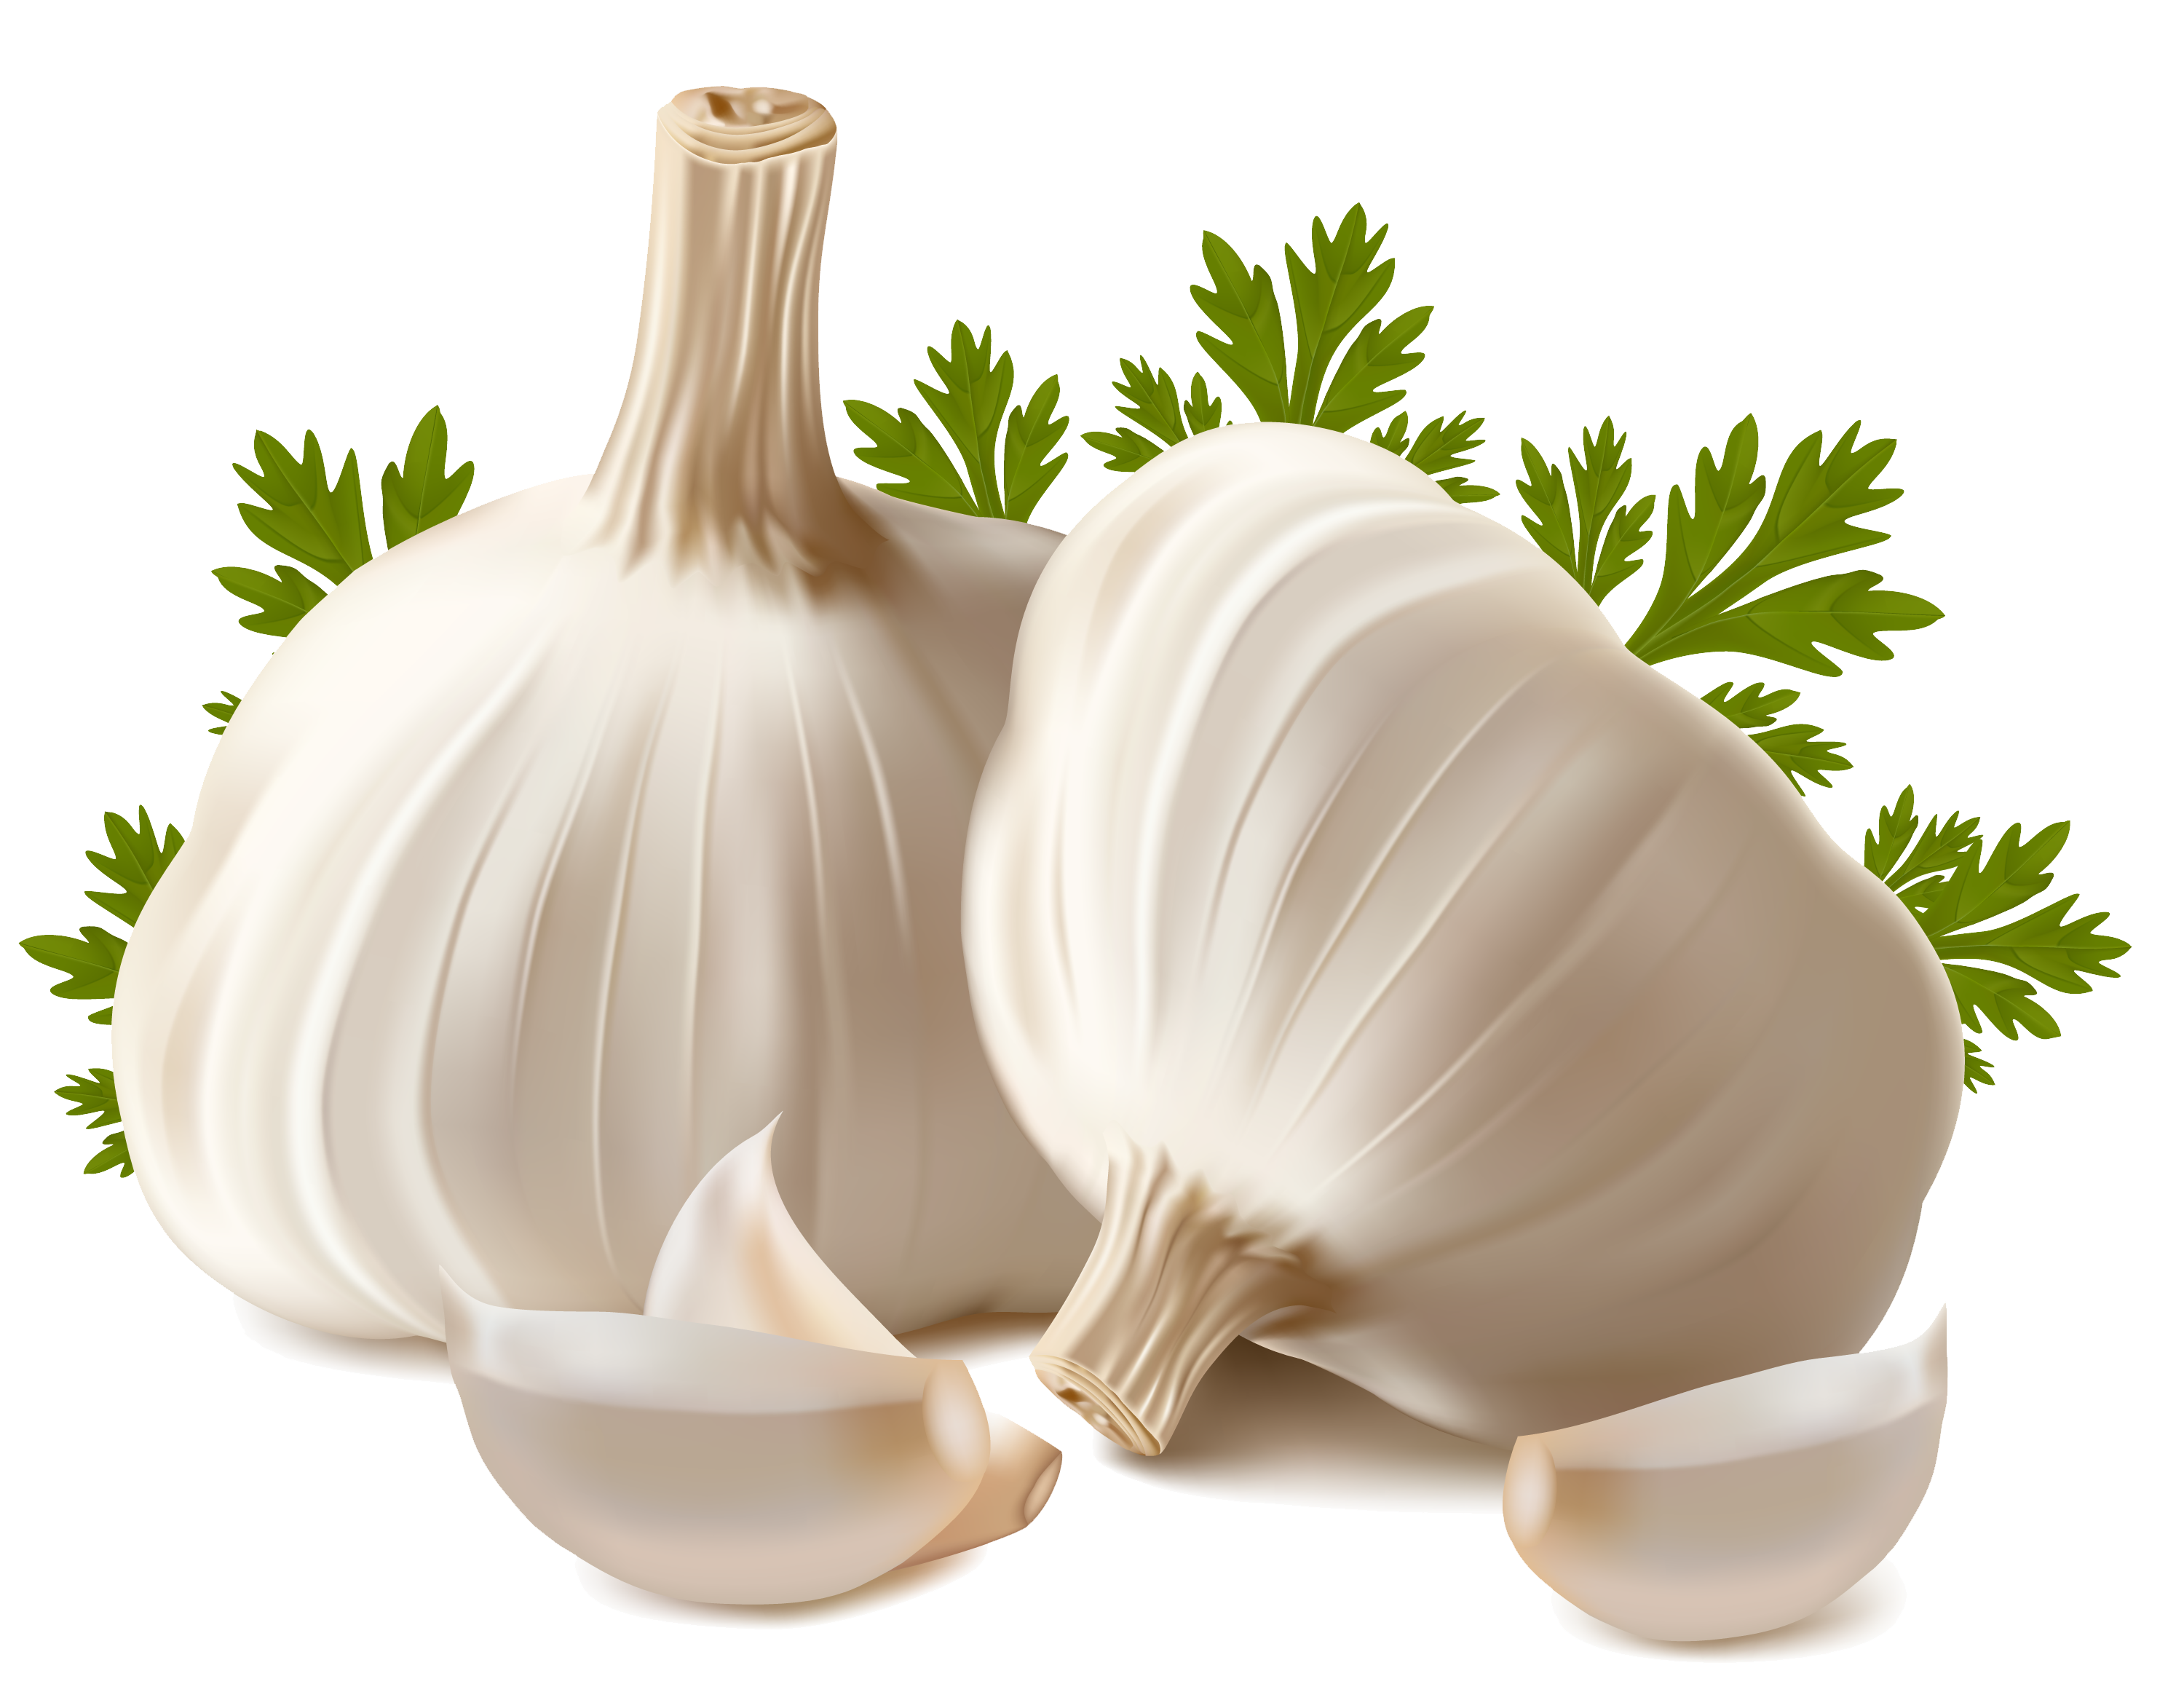 Garlic PNG images free download, garlic PNG.